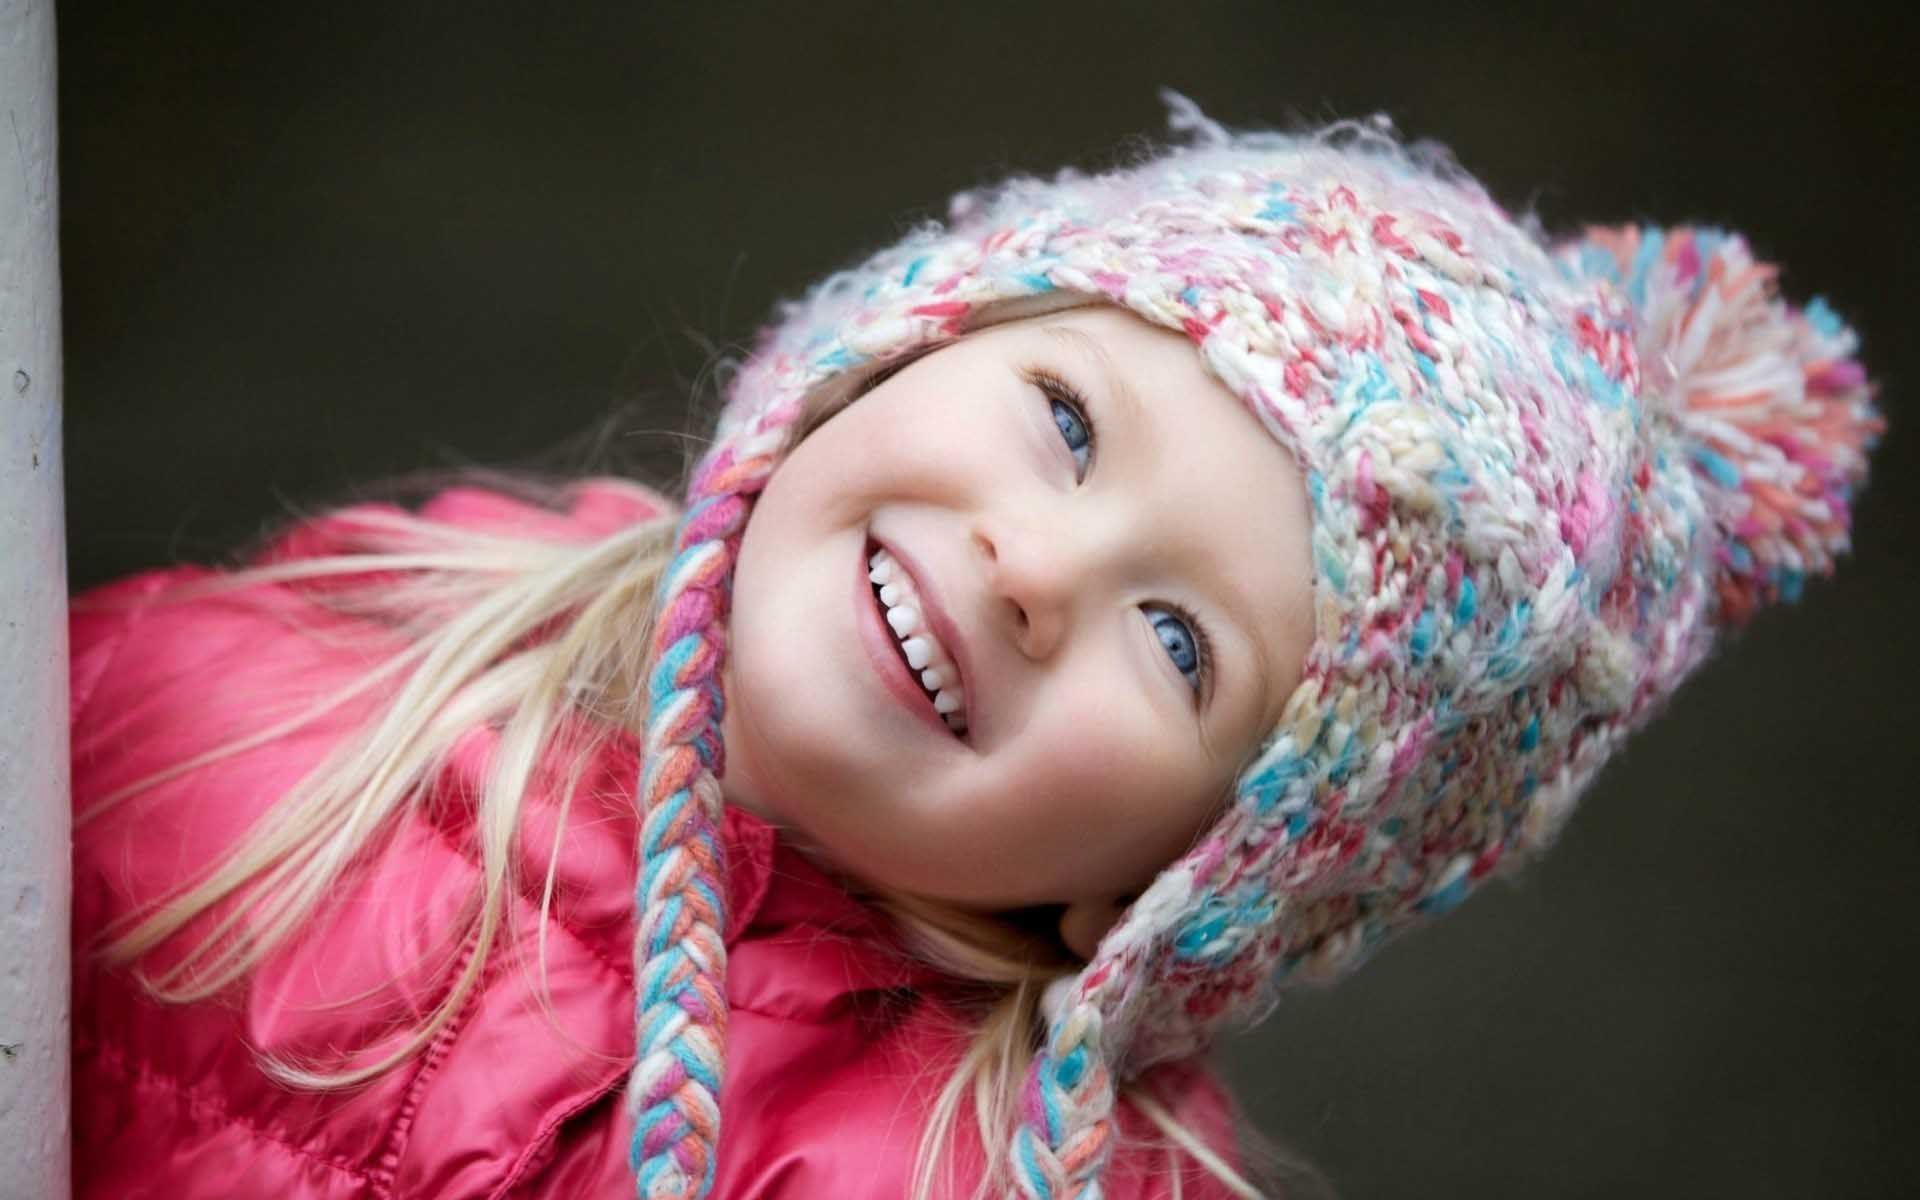 Mood Children Girl Smile Wallpaper Wallpaper - Baby Images Full Hd 1080p -  1920x1200 Wallpaper 